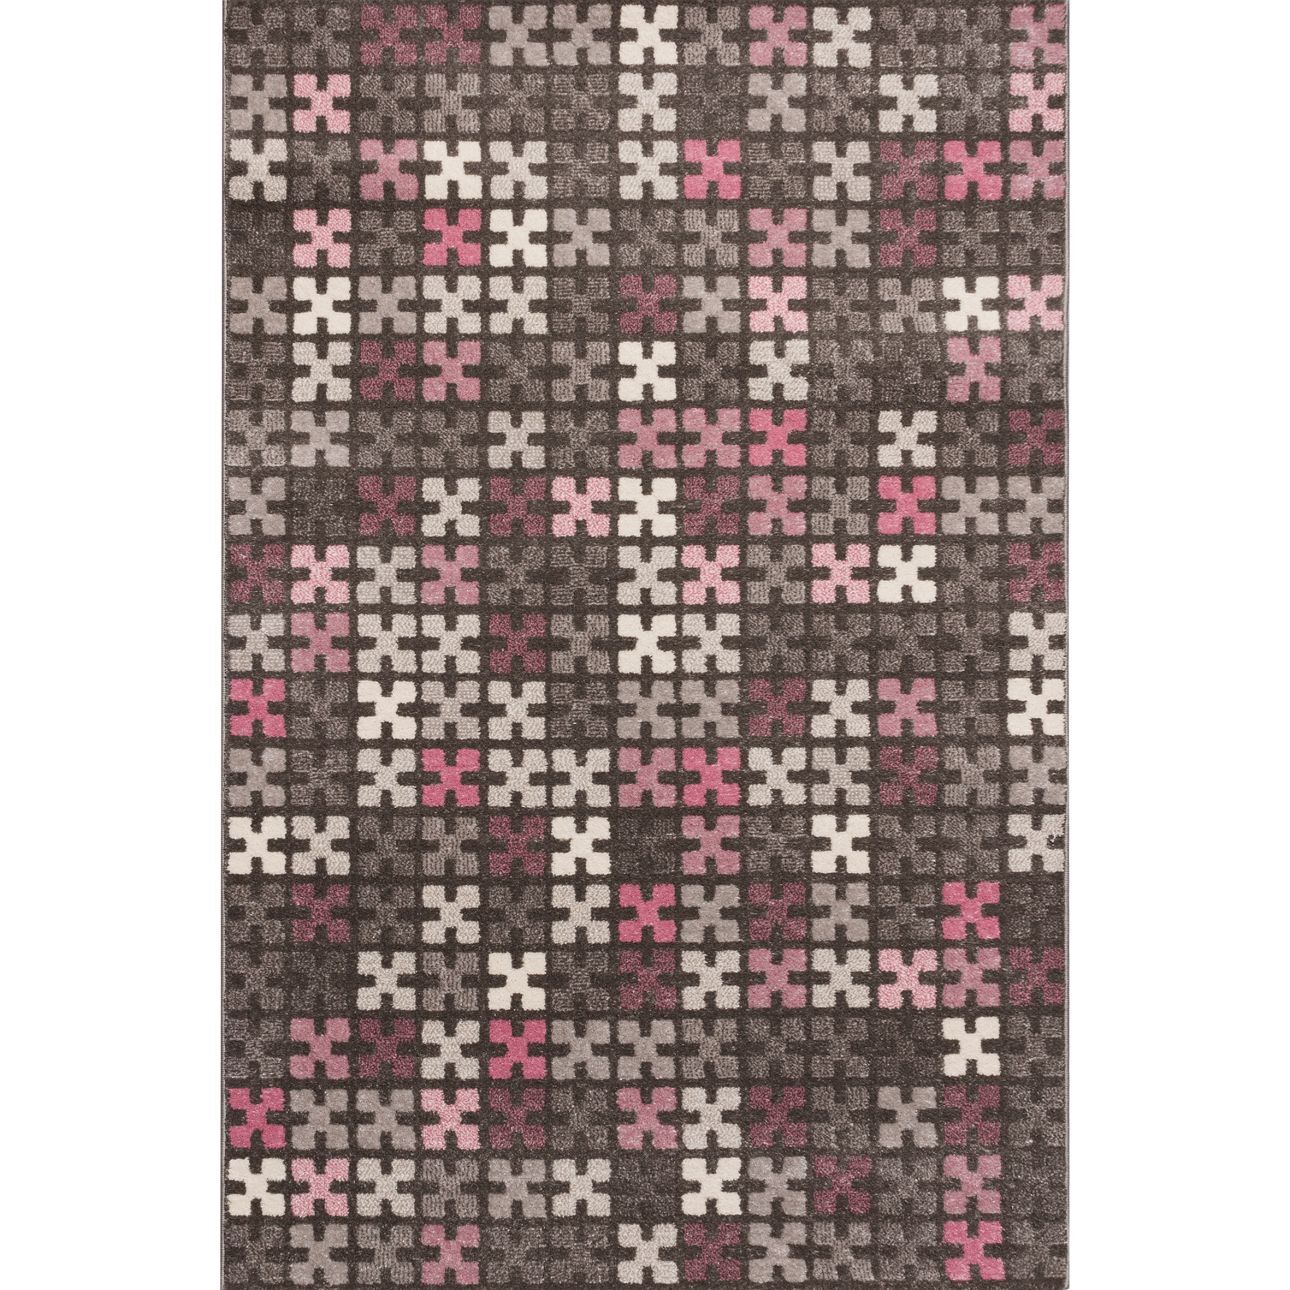 Teppich Modern Puzzle Charisma rose-frost grey 135x190cm, 135 x 190 cm günstig online kaufen